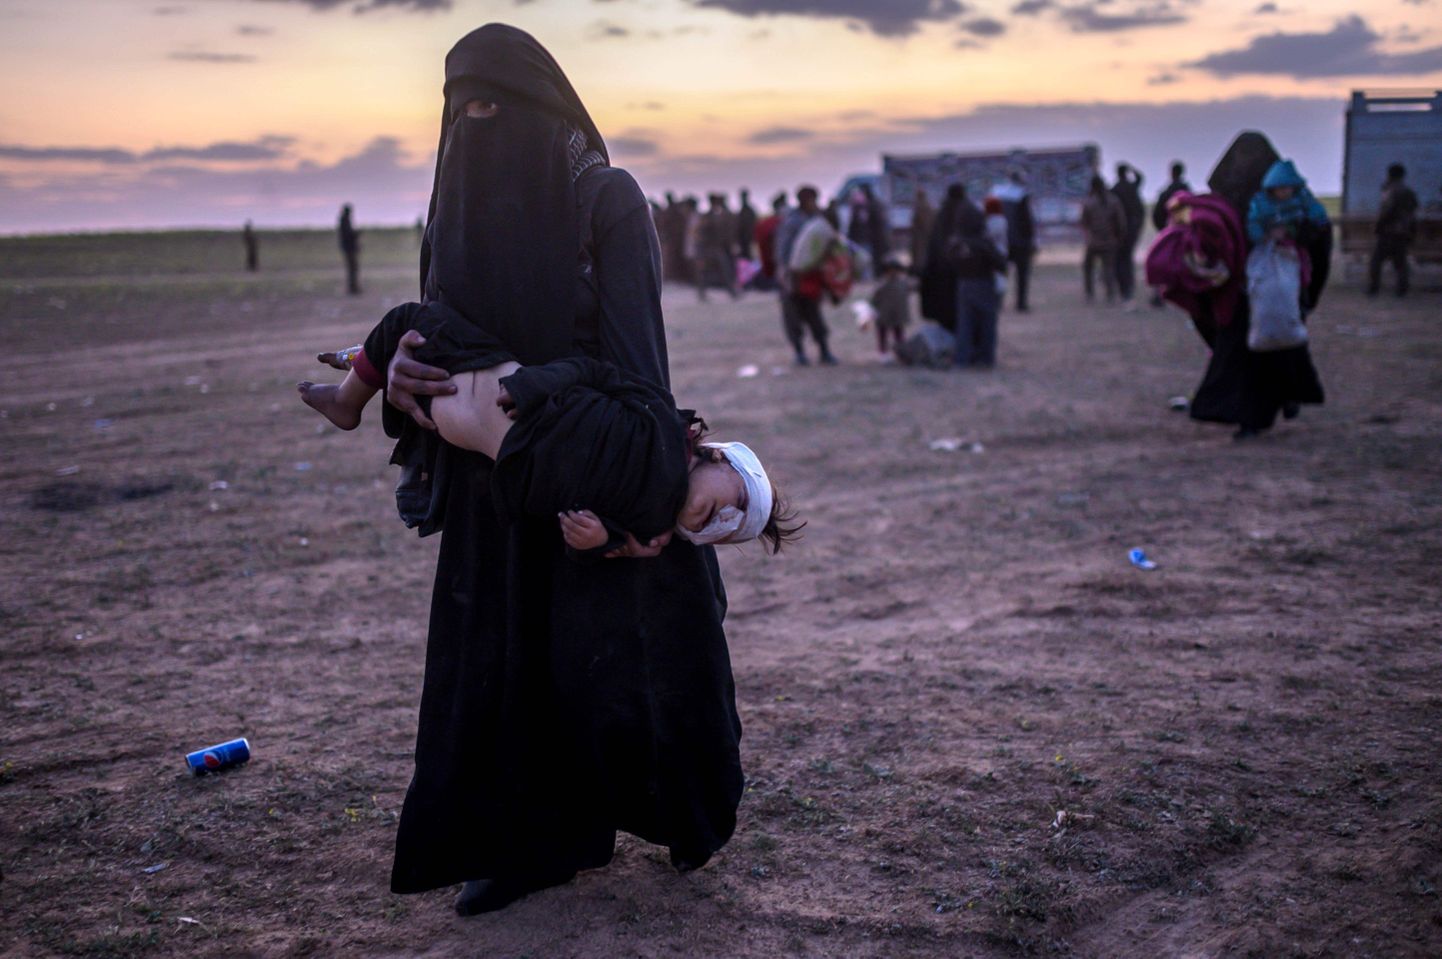 Islamiriigi viimasest kantsist evakueeriti eile ligikaudu 3000 inimest, nende seas pildil olev naine, kes lahkus piirkonnast koos oma haavatud lapsega.